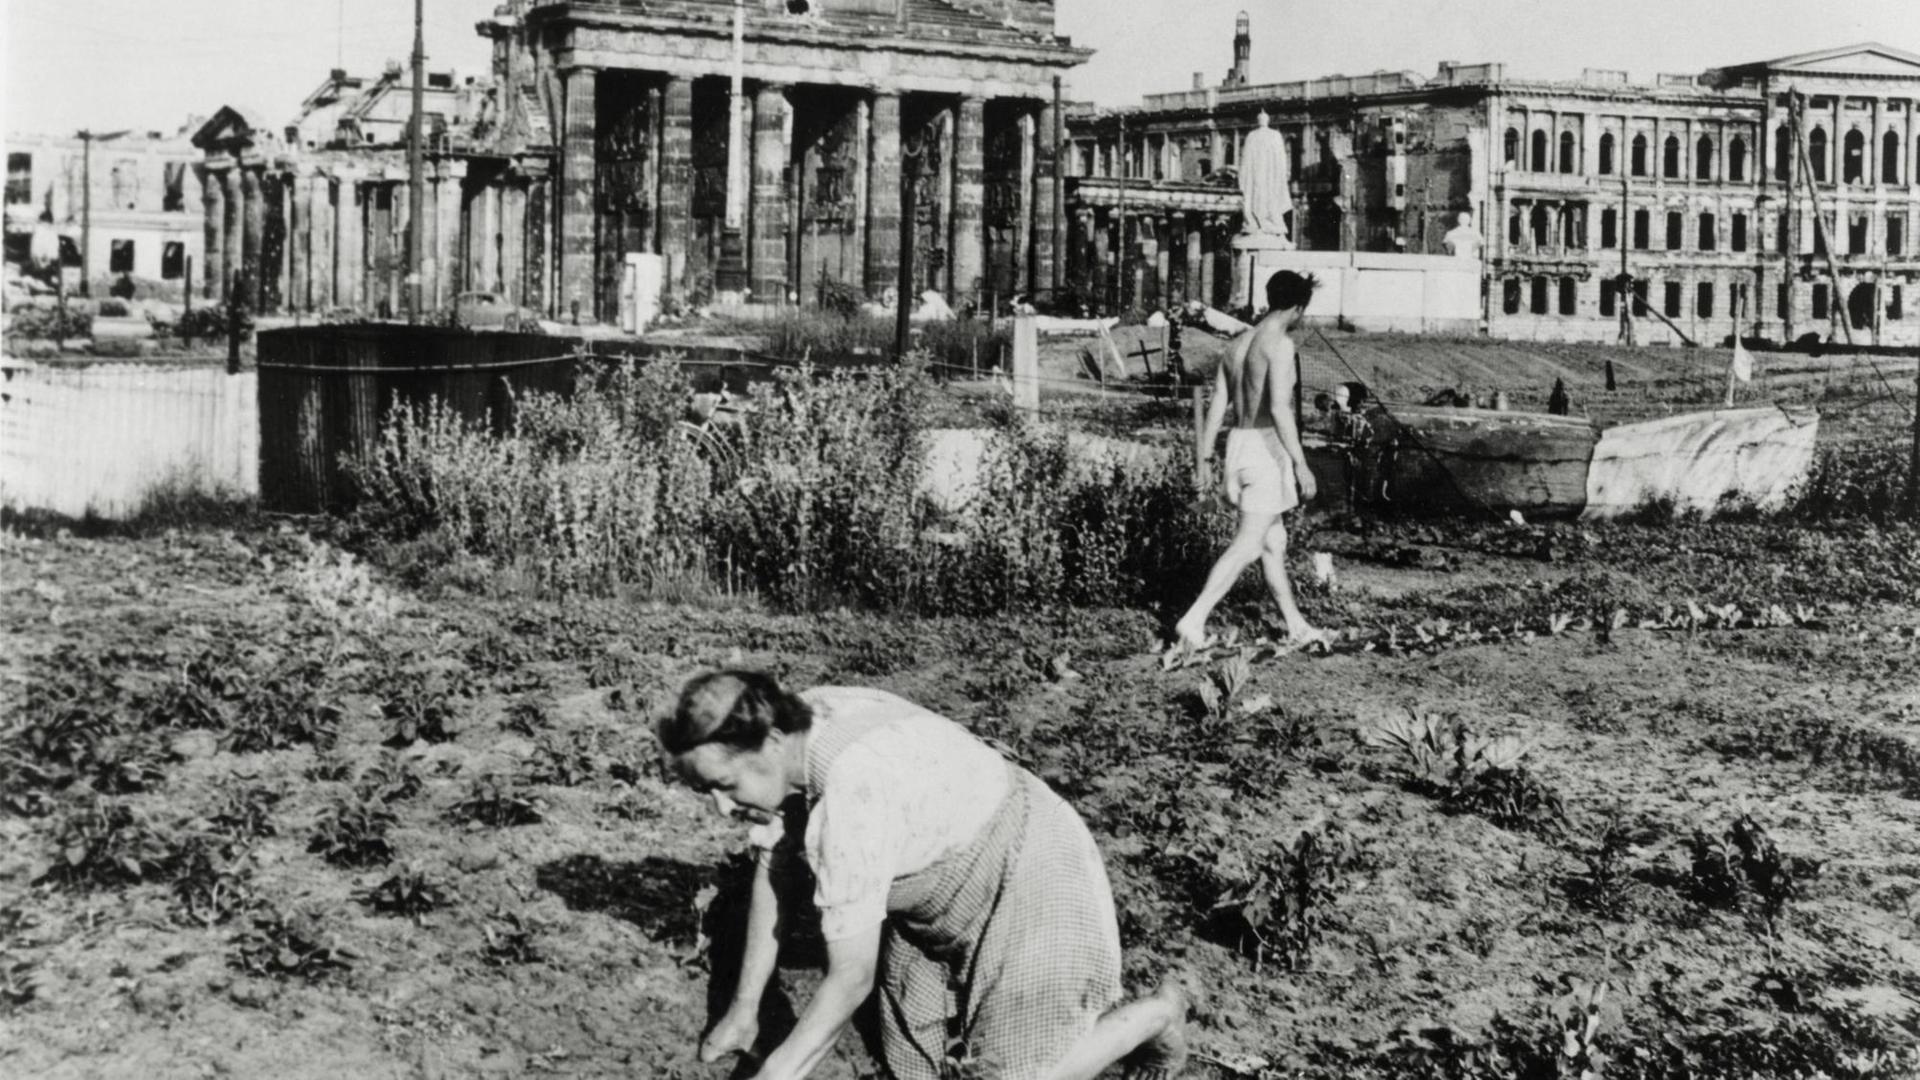 Am Brandenburger Tor wird Gemüse angebaut 1947: Im Hintergrund das beschädigte Brandenburger Tor.